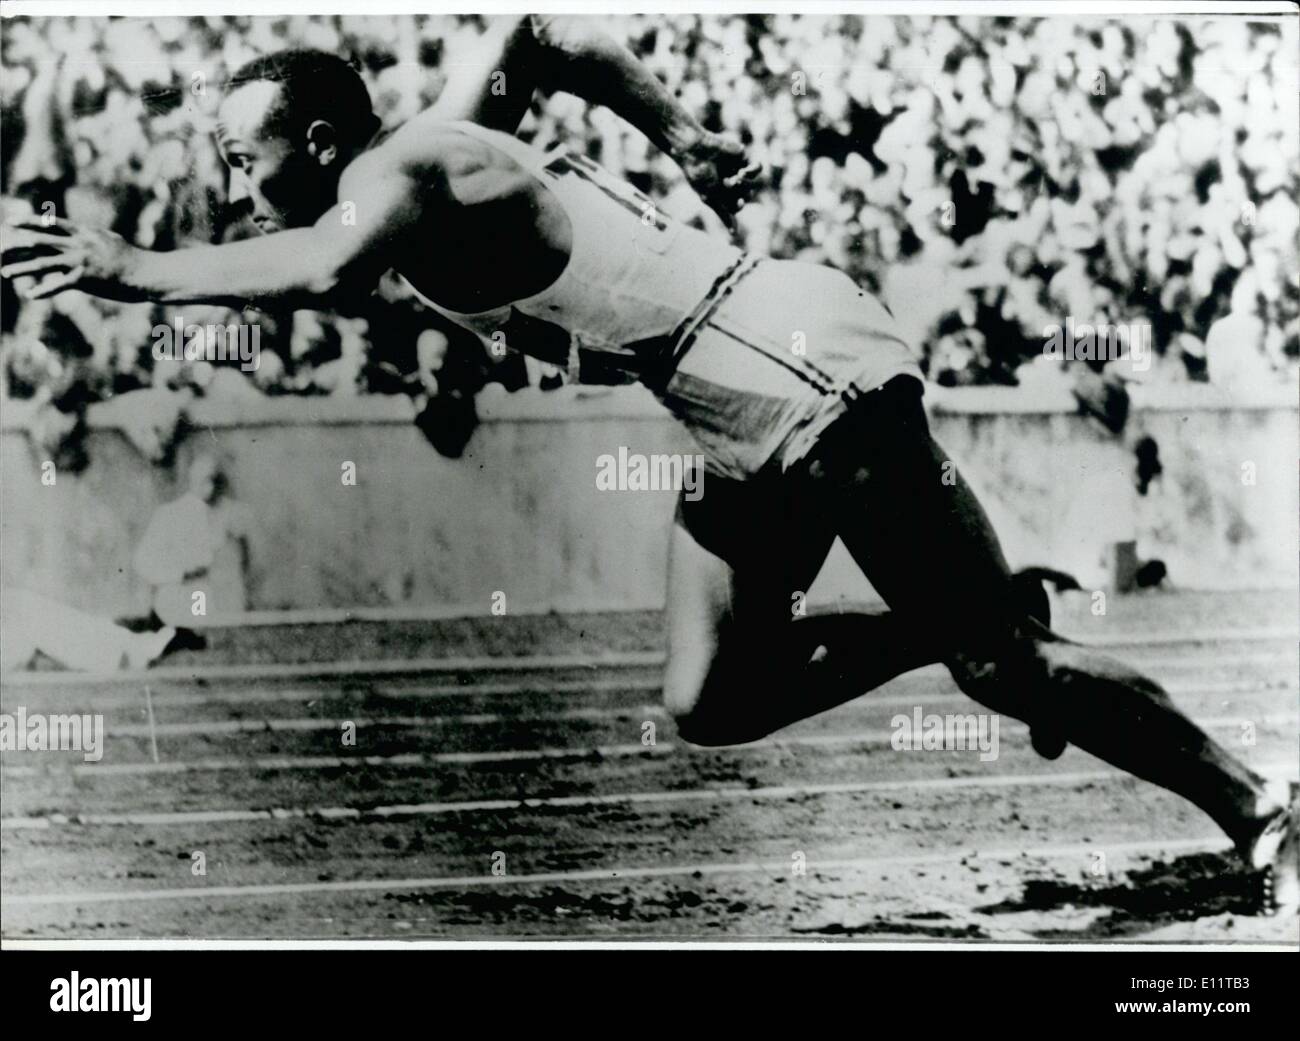 Mar. 03, 1980 - Médaille d'or aux Jeux Olympiques de 1936 gagnant, Jesse Owens, est mort en Loung-Cancer : Au cours des dernières années s'Owens une firme de relations publiques à Phoenix en Arizona. Il a également était une star d'un spot publicitaire TV pour les cartes de crédit. En décembre de l'année dernière il a soudainement eu des difficultés de respiration. L'examen a porté le résultat : le cancer du poumon. Dans les mois suivants le sportif bien connu a souvent assisté dans certains hôpitaux, mais tous l'aide est arrivée trop tard. Photo montre triomphe à Berlin ; 1936 Jesse Owens remporte au 100 et 200 mètres Banque D'Images